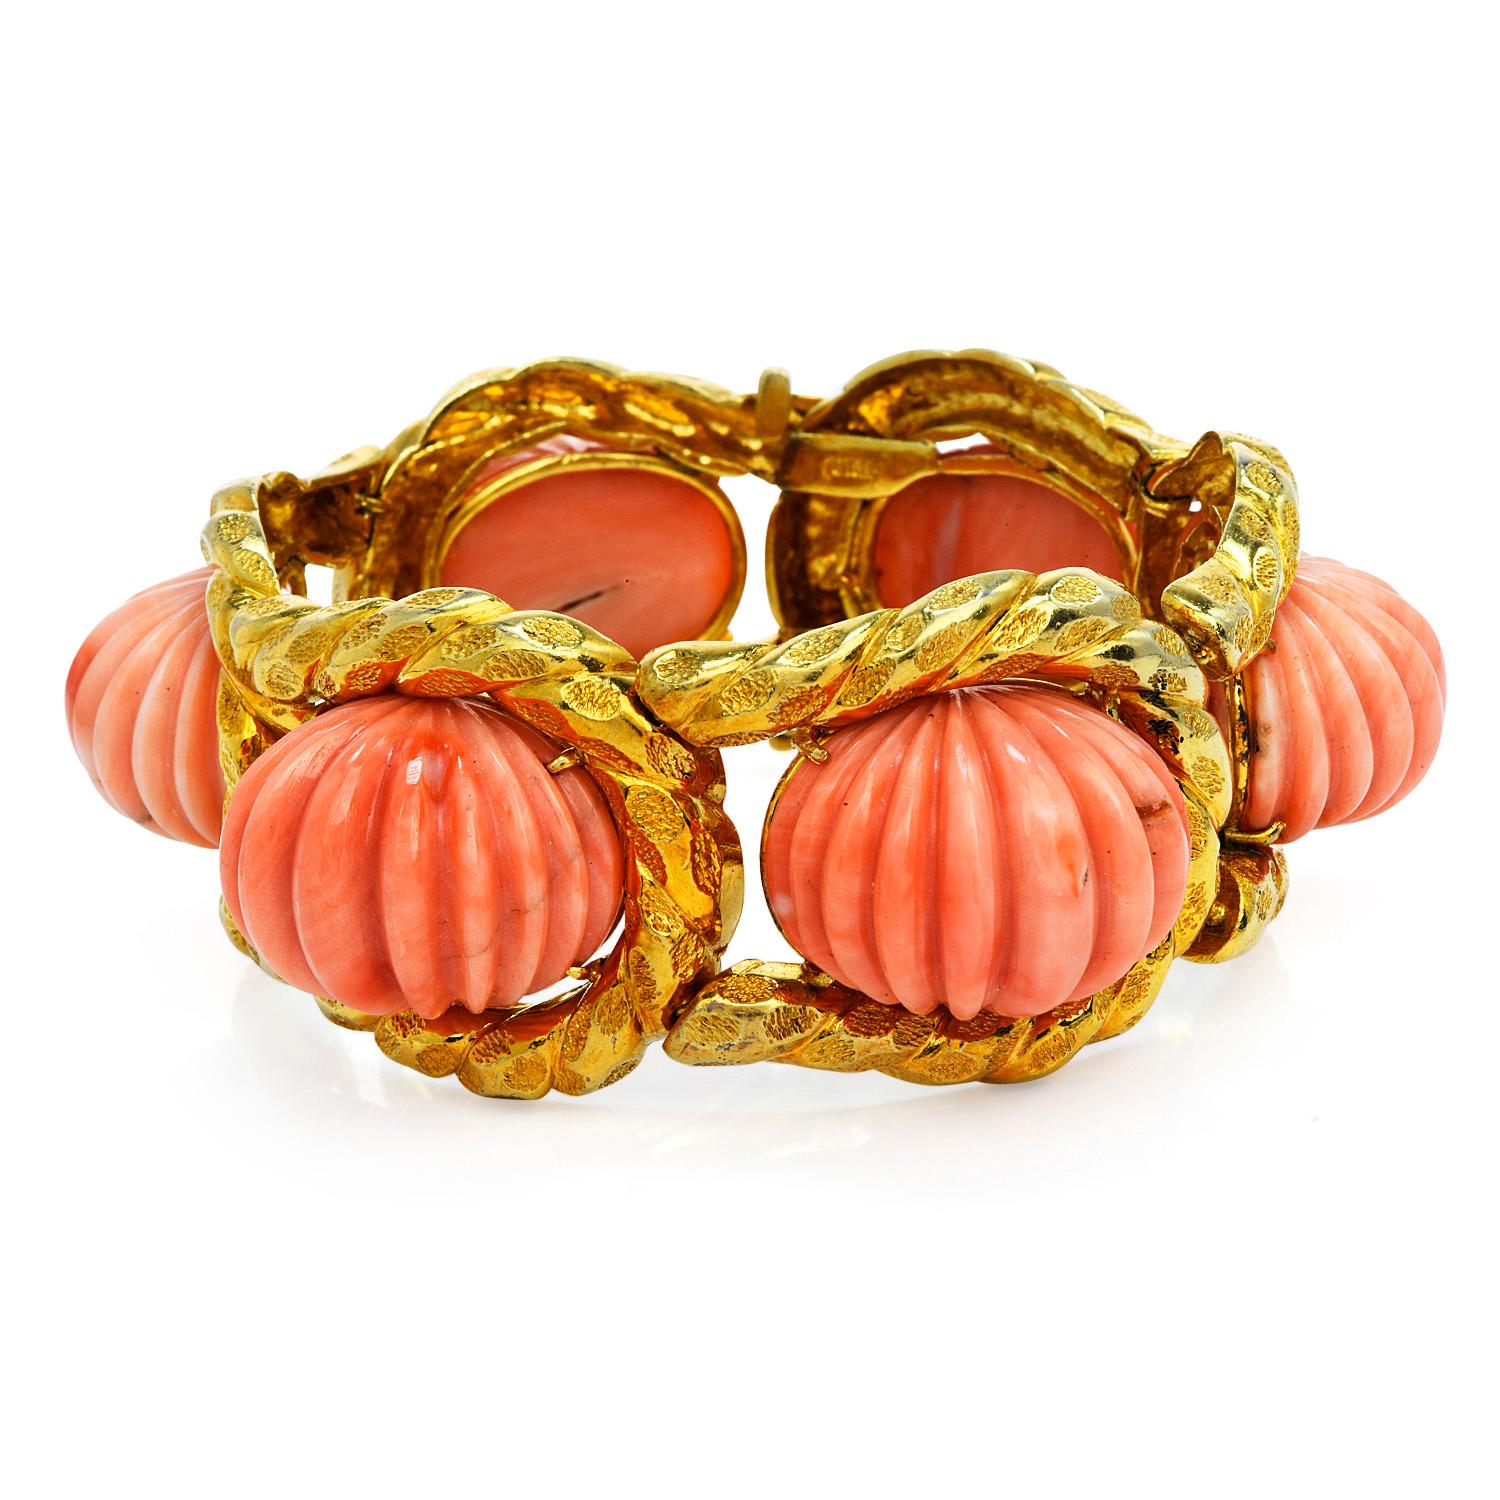 Aus dem Meer kommende Schönheit in einem markanten breiten Gliederarmband.

exquisite strukturierte Design, auf dieser Vintage 1970's rosa geschnitzt Korallen & Stück in massivem 18K Gelbgold gefertigt.
In der Mitte befinden sich 6 echte